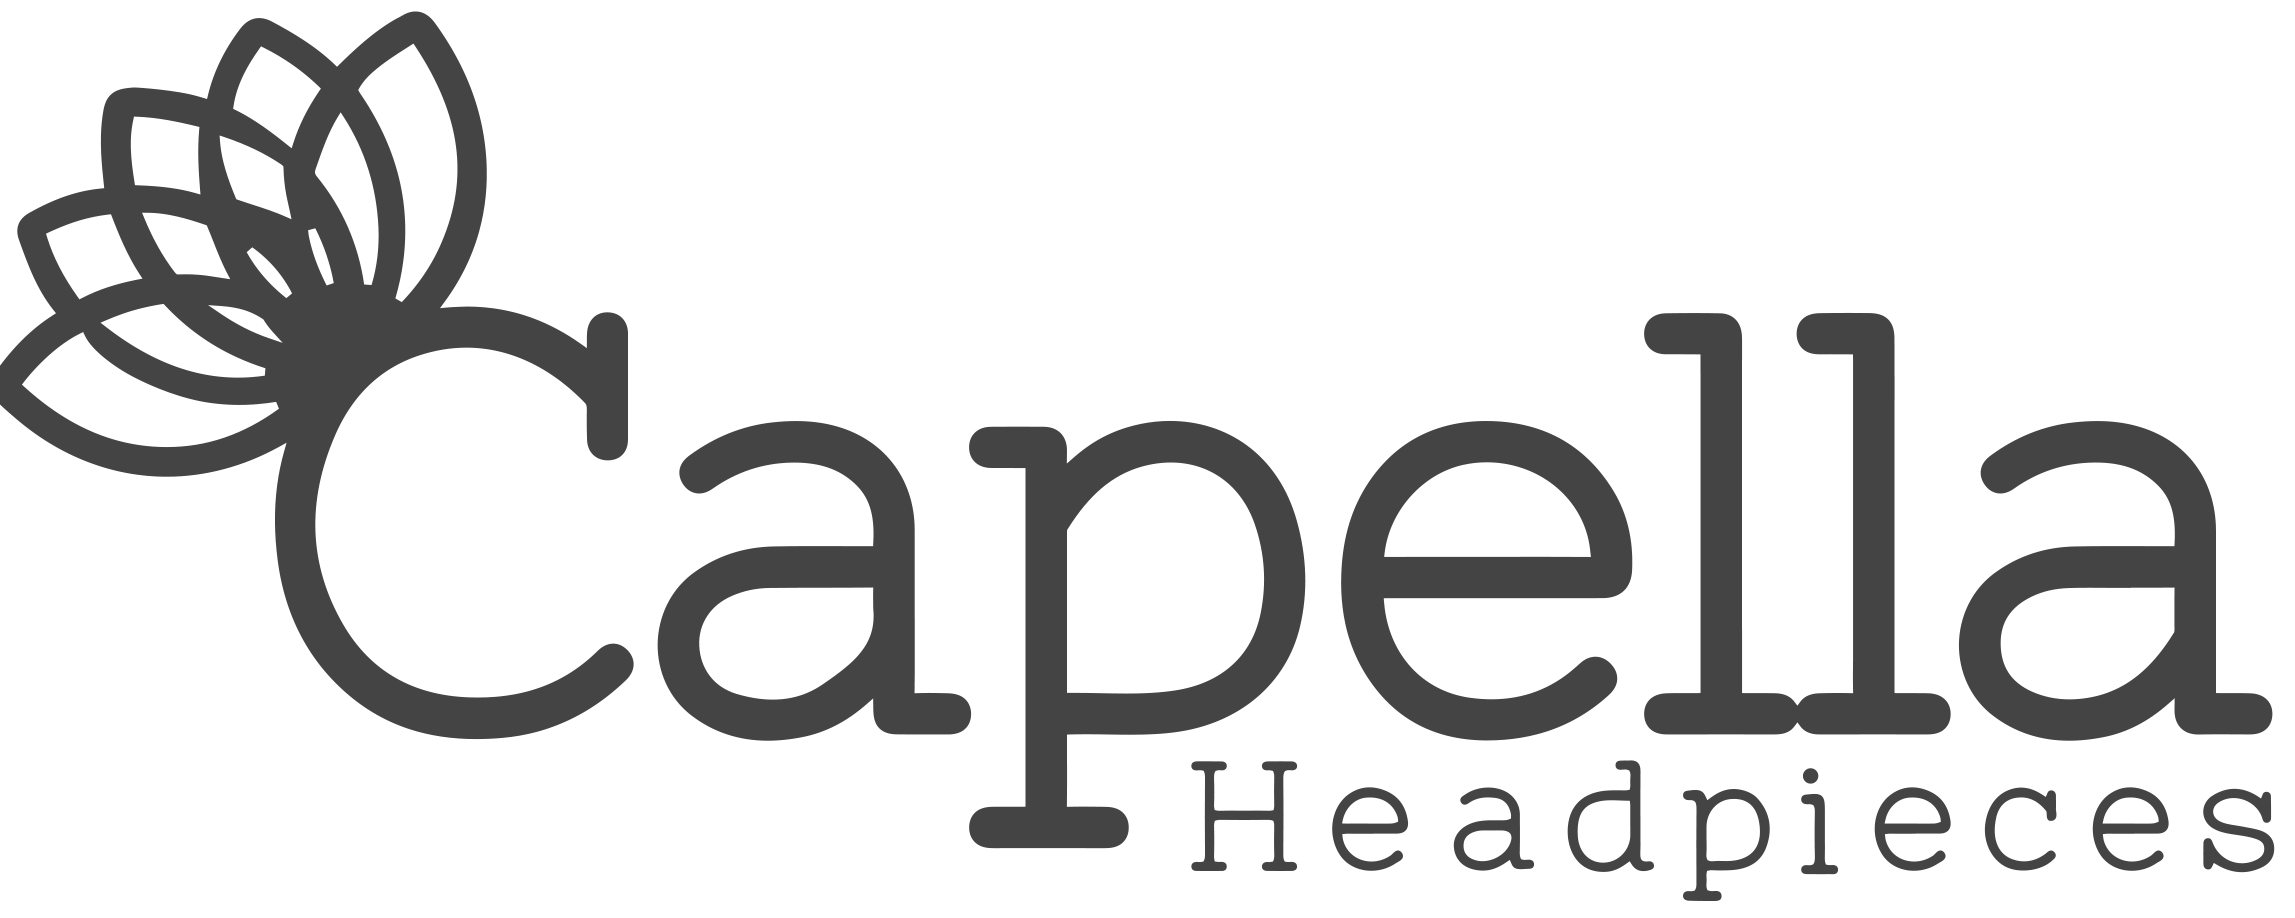 Capella Headpieces